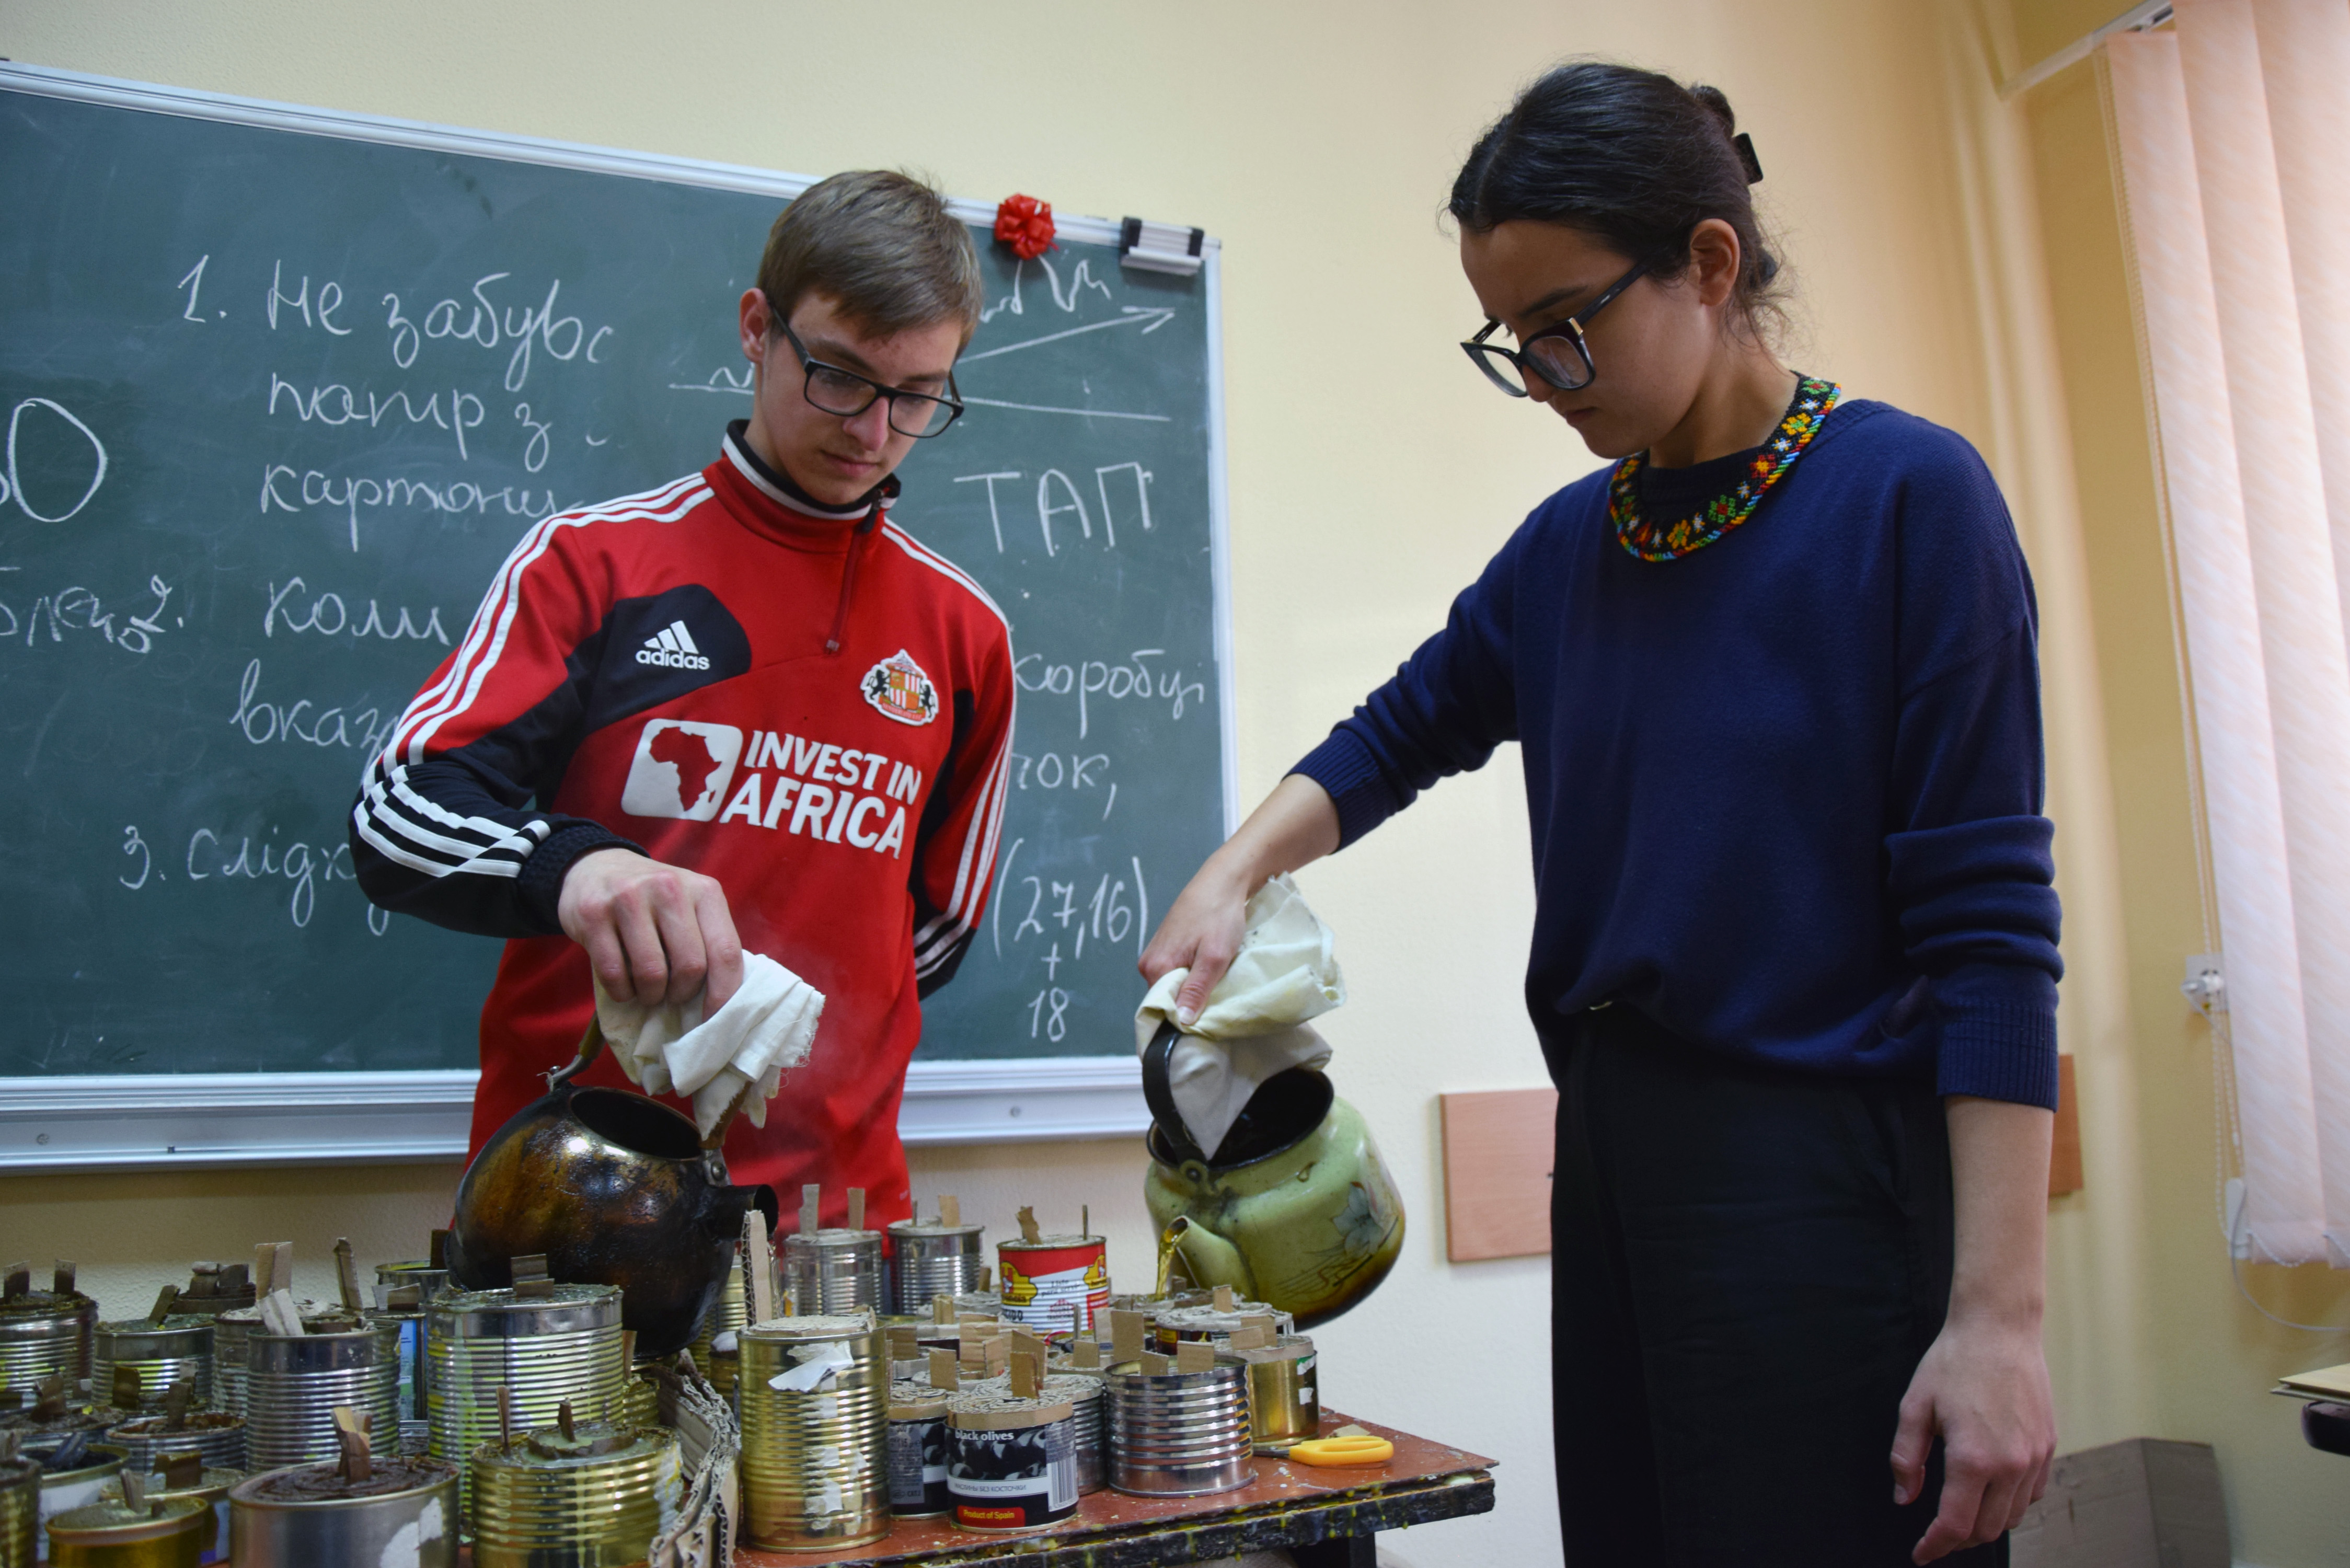 Студенти медичного факультету Віталій Вишневський та Віта Голуб виконують одну з операцій виготовлення окопних свічок